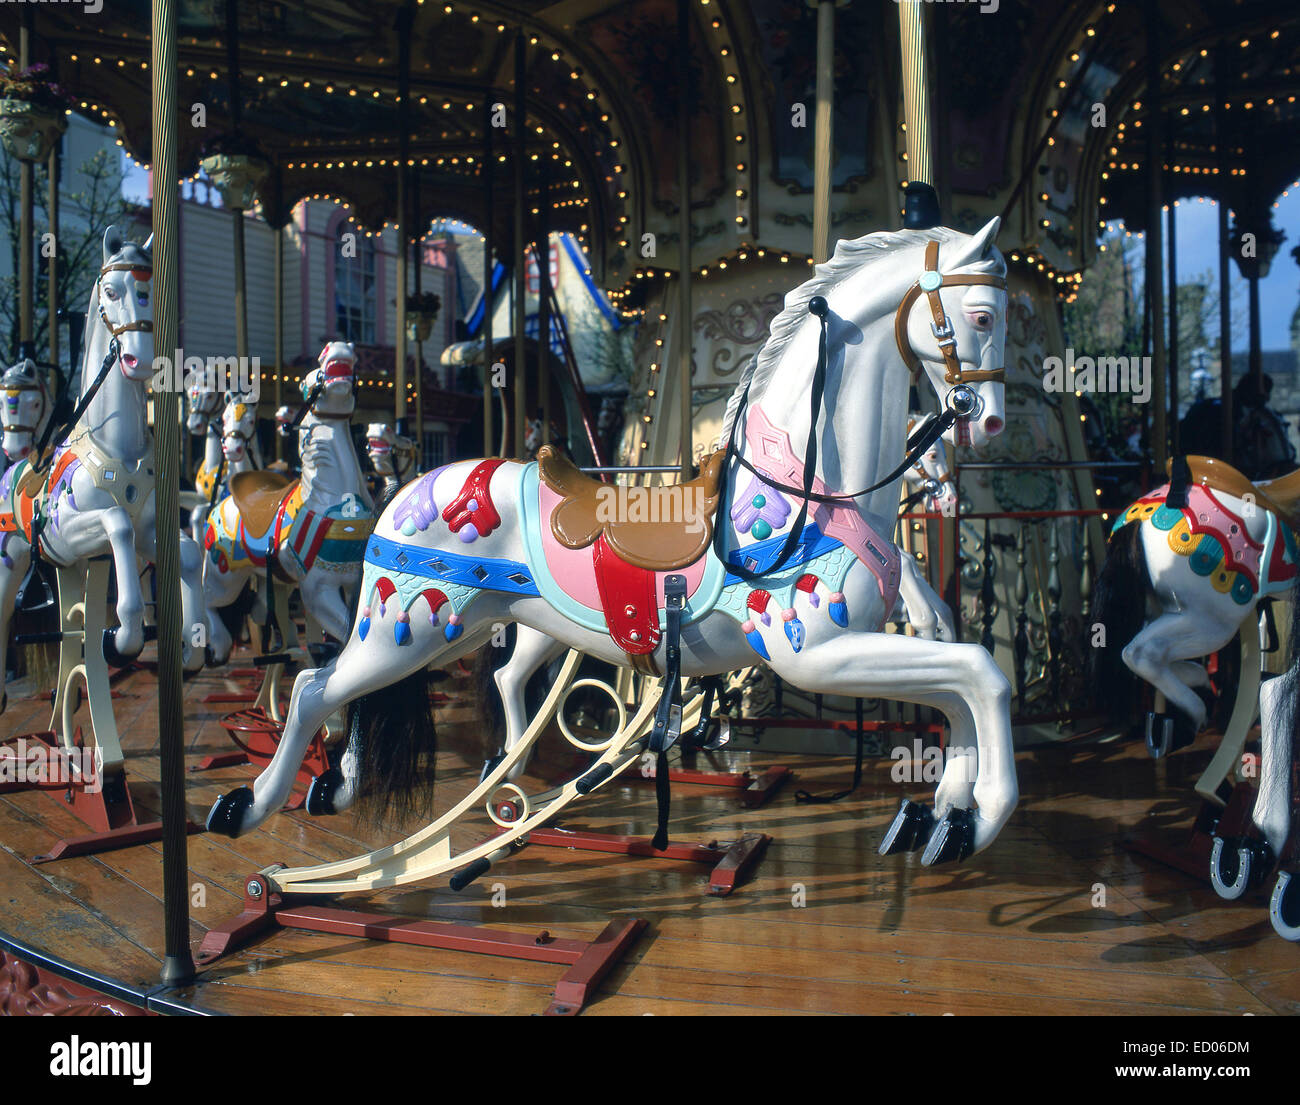 Gallopers Carousel au parc à thème Alton Towers, Alton, Staffordshire, Angleterre, Royaume-Uni Banque D'Images